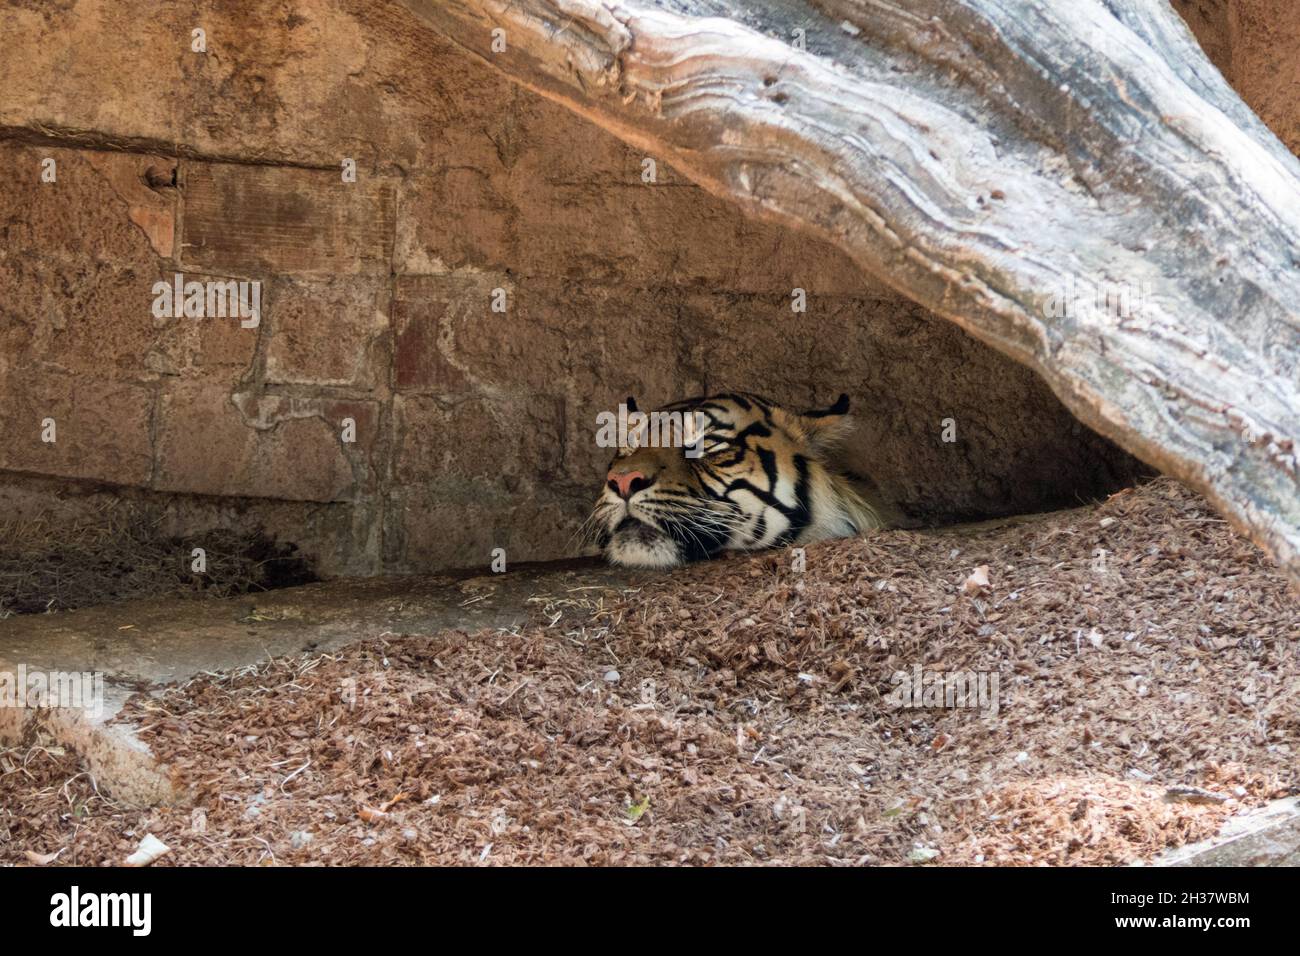 Zoo di Barcellona con tigre che dorme nel recinto. Animale asiatico e carnivoro che riposano in gabbia giardino zoologico Foto Stock